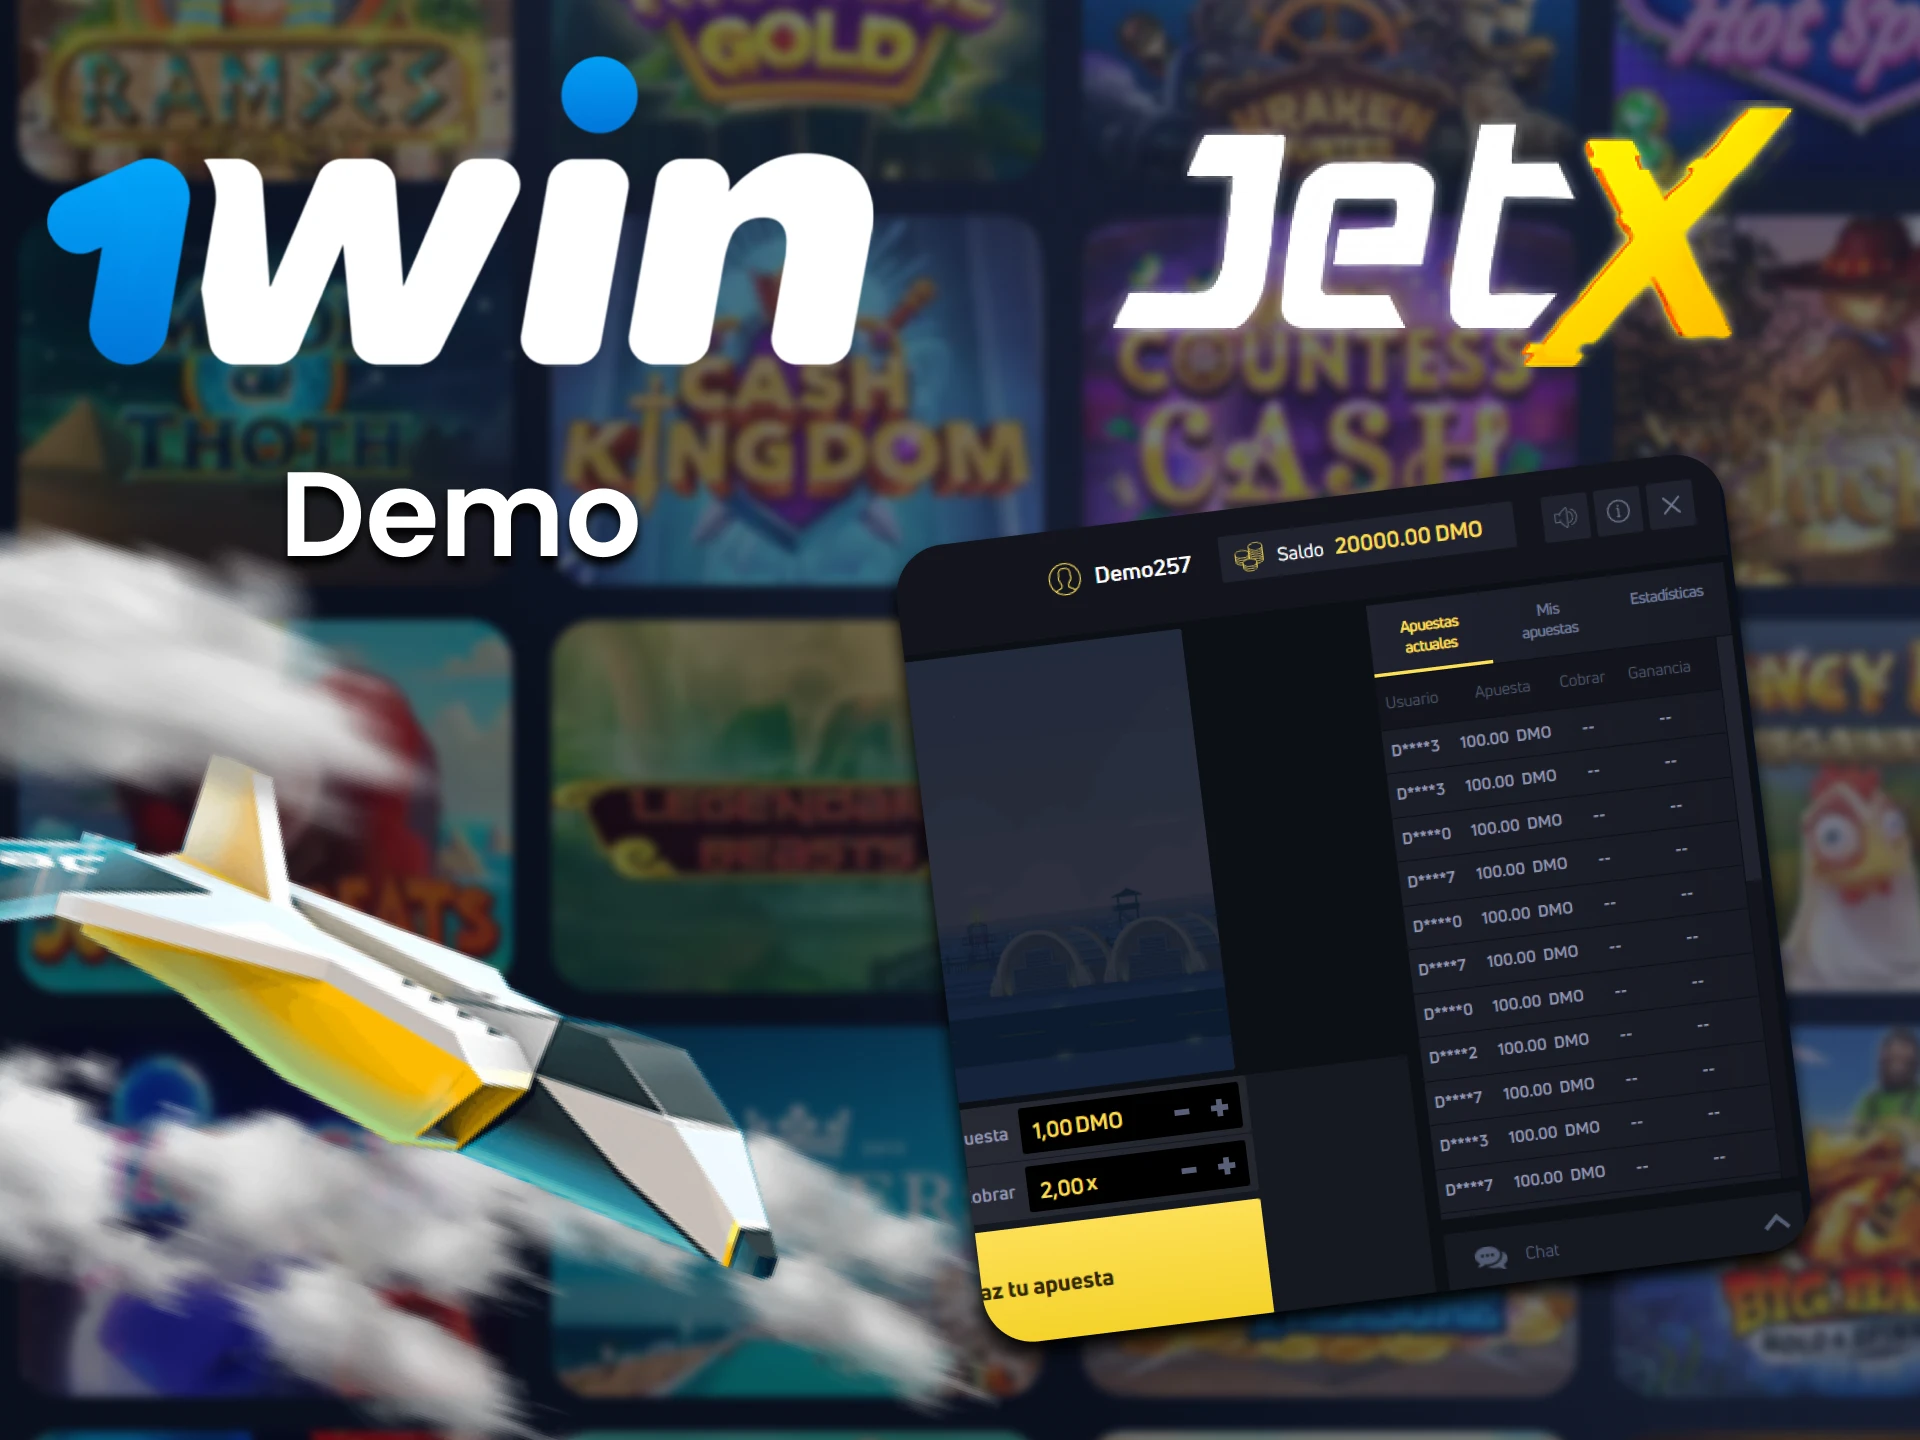 Entrena en la versión de demostración del juego JetX en 1win.